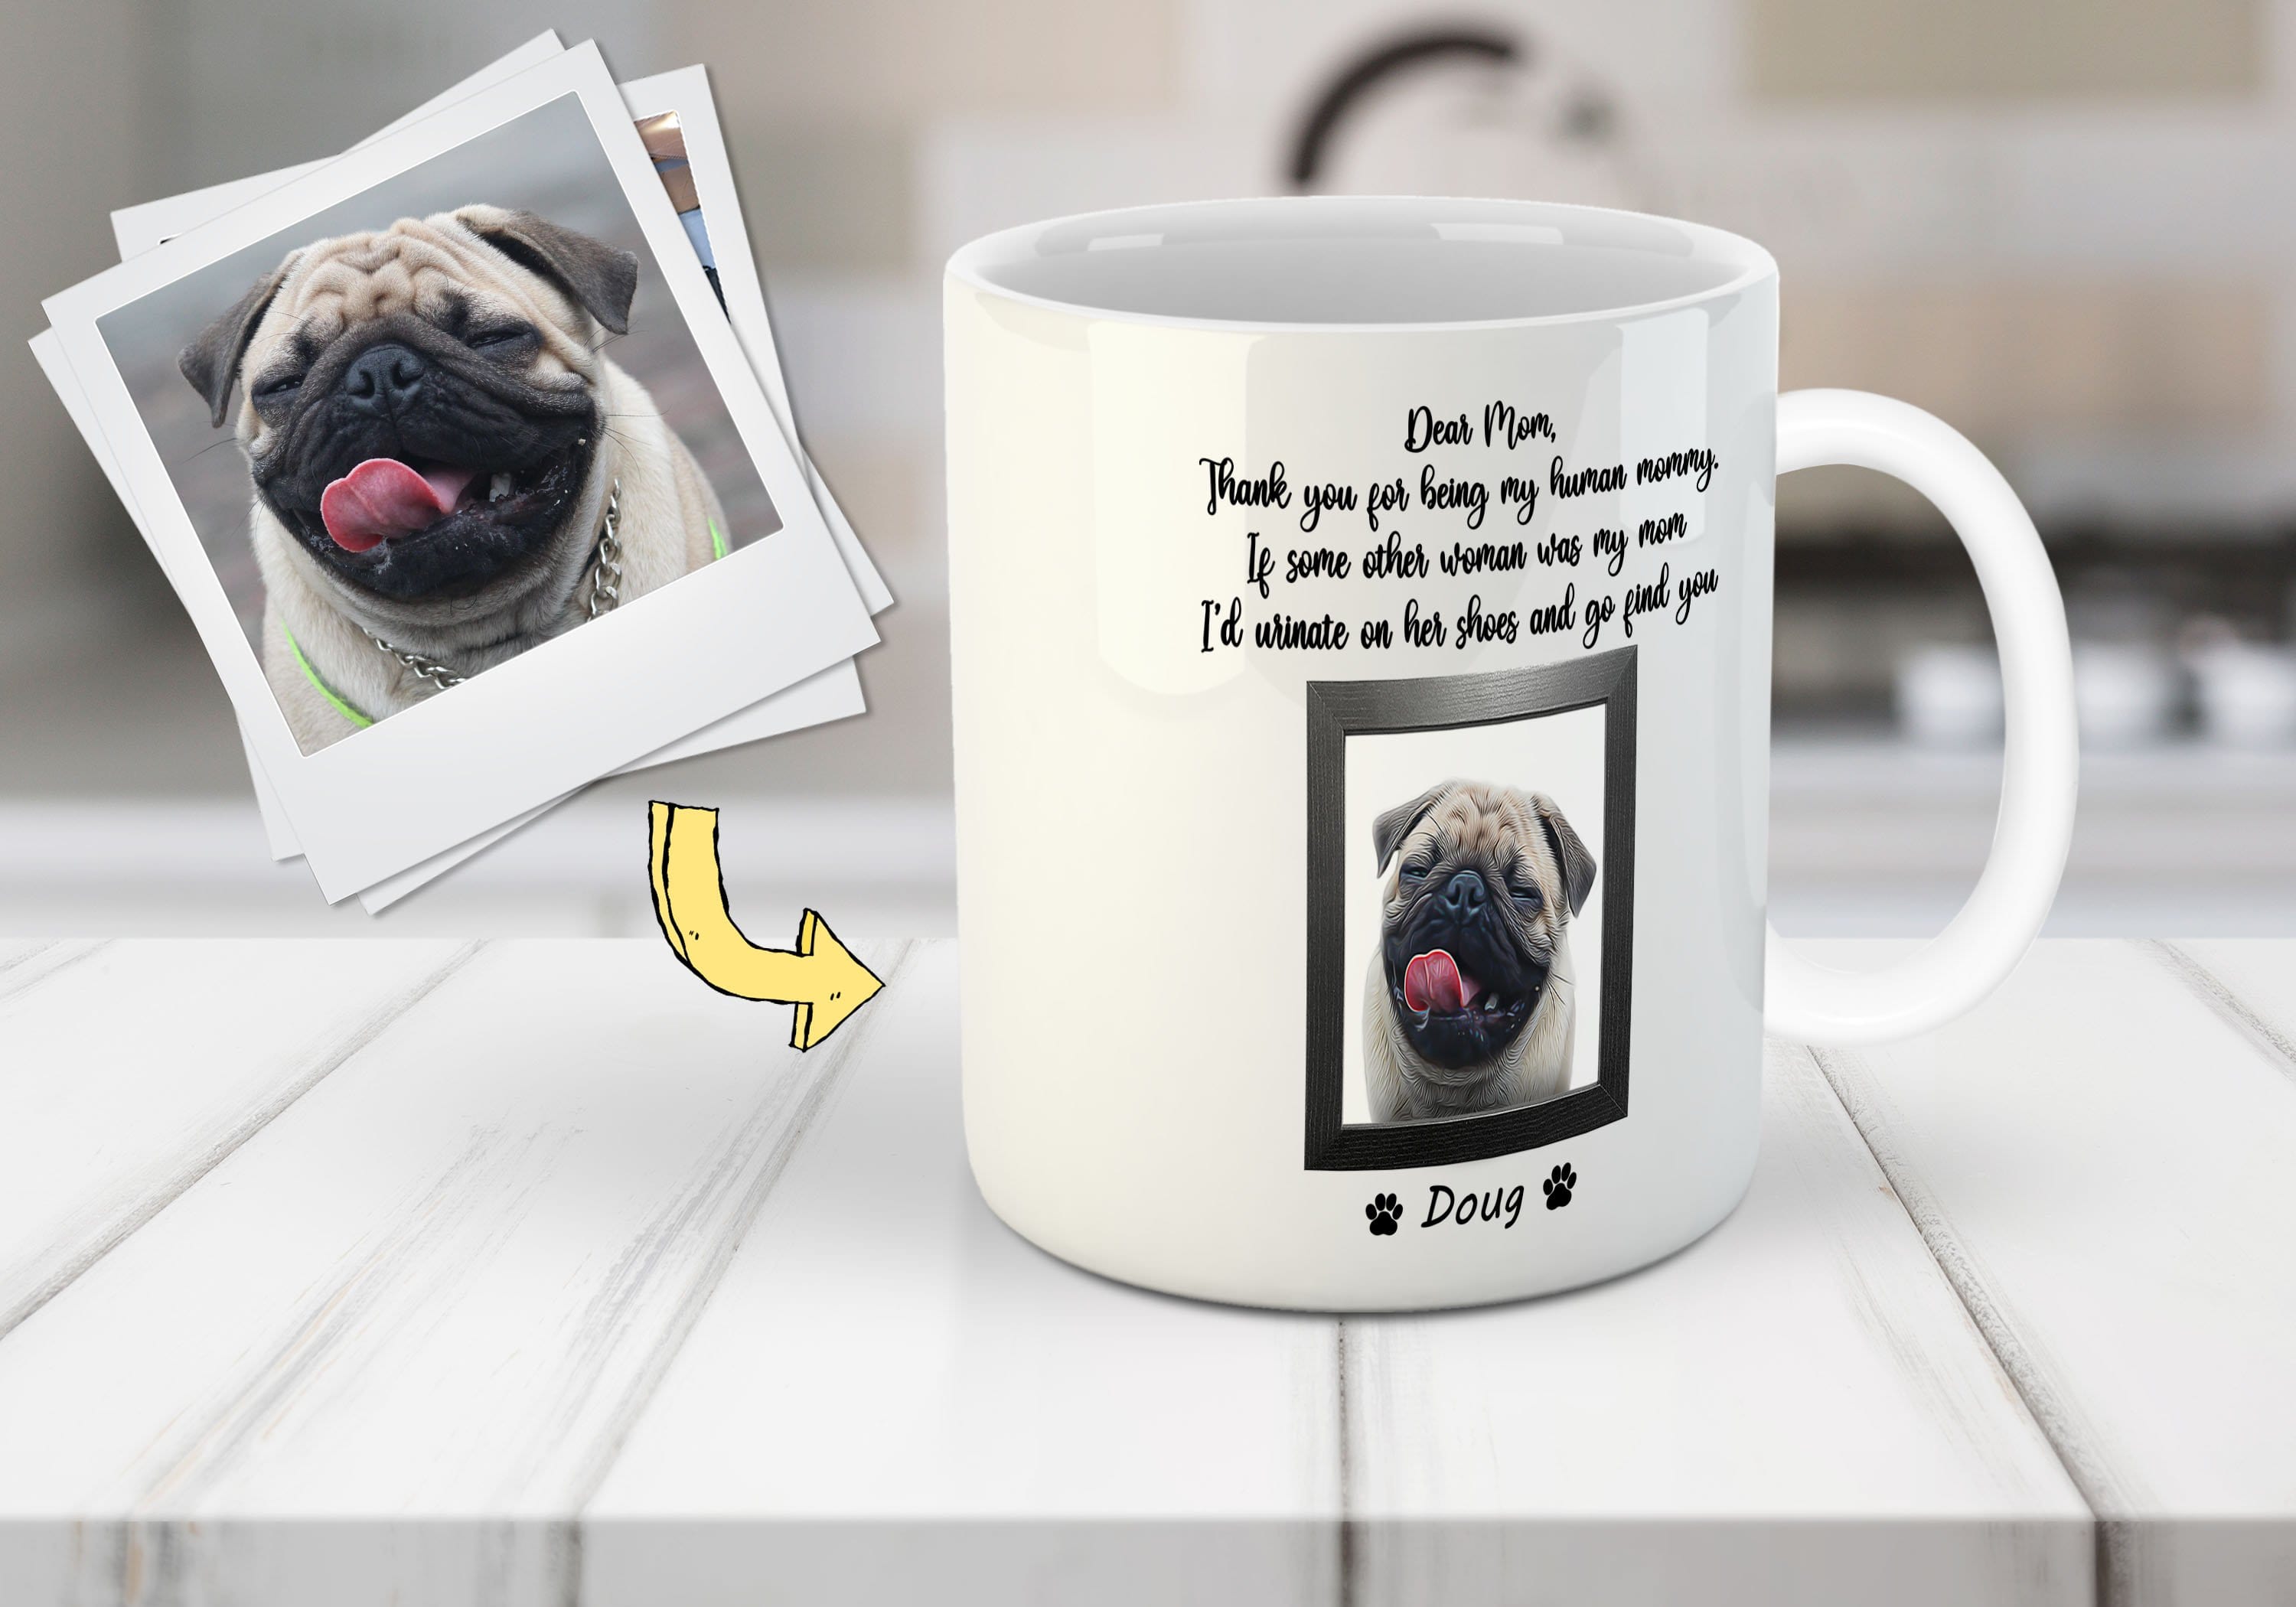 &#39;Dear Pet Mom&#39; Custom Pet Mug